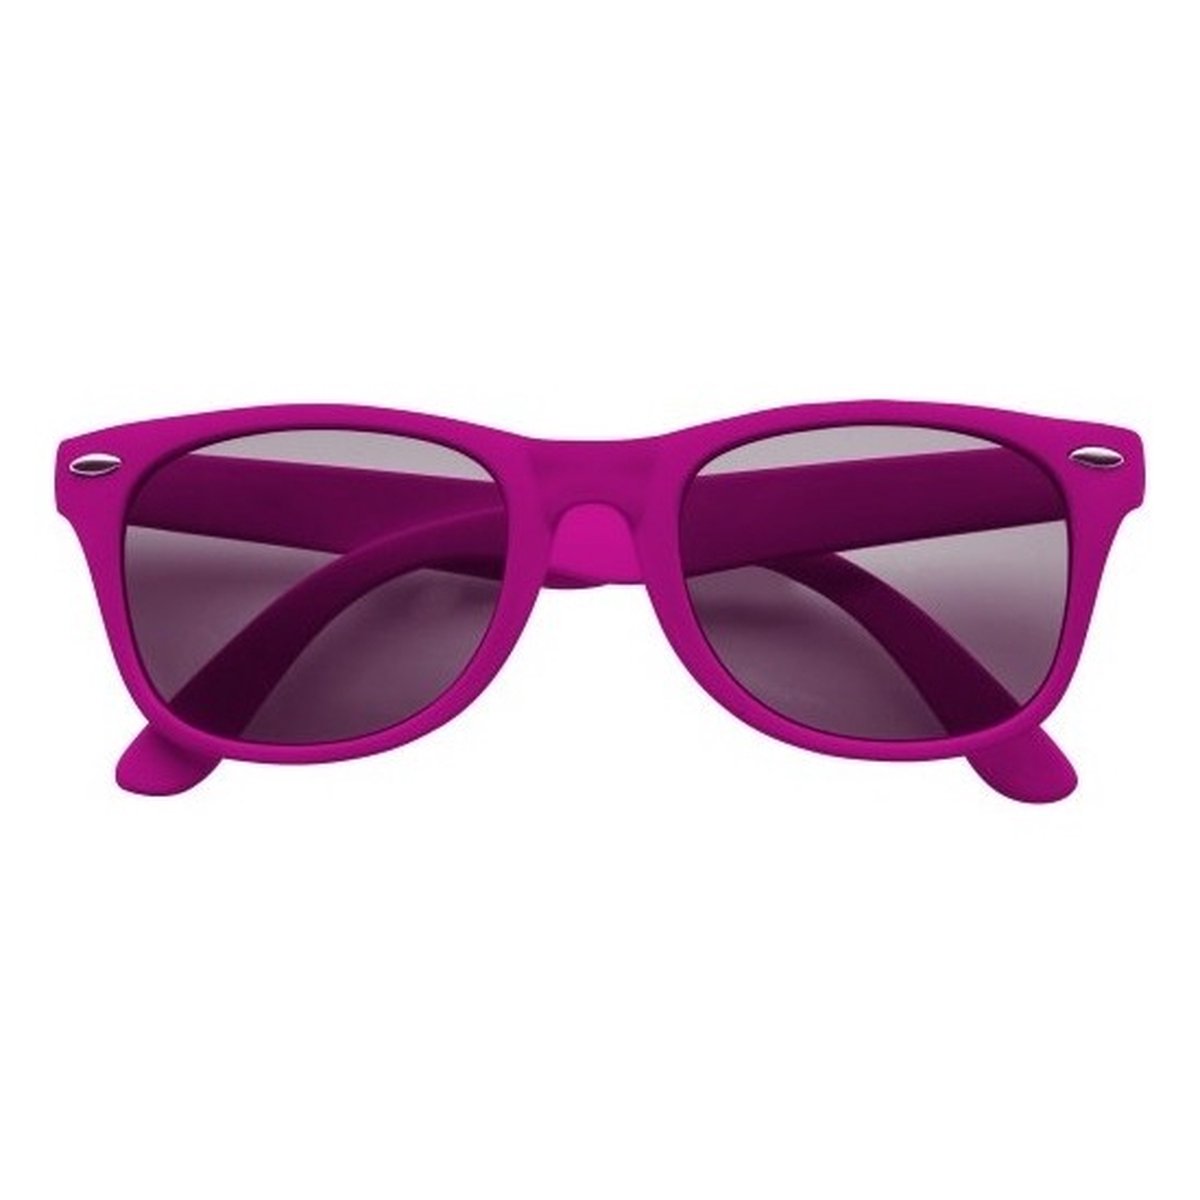 Feest zonnebril fuchsia roze - Zonnebrillen voor dames/heren